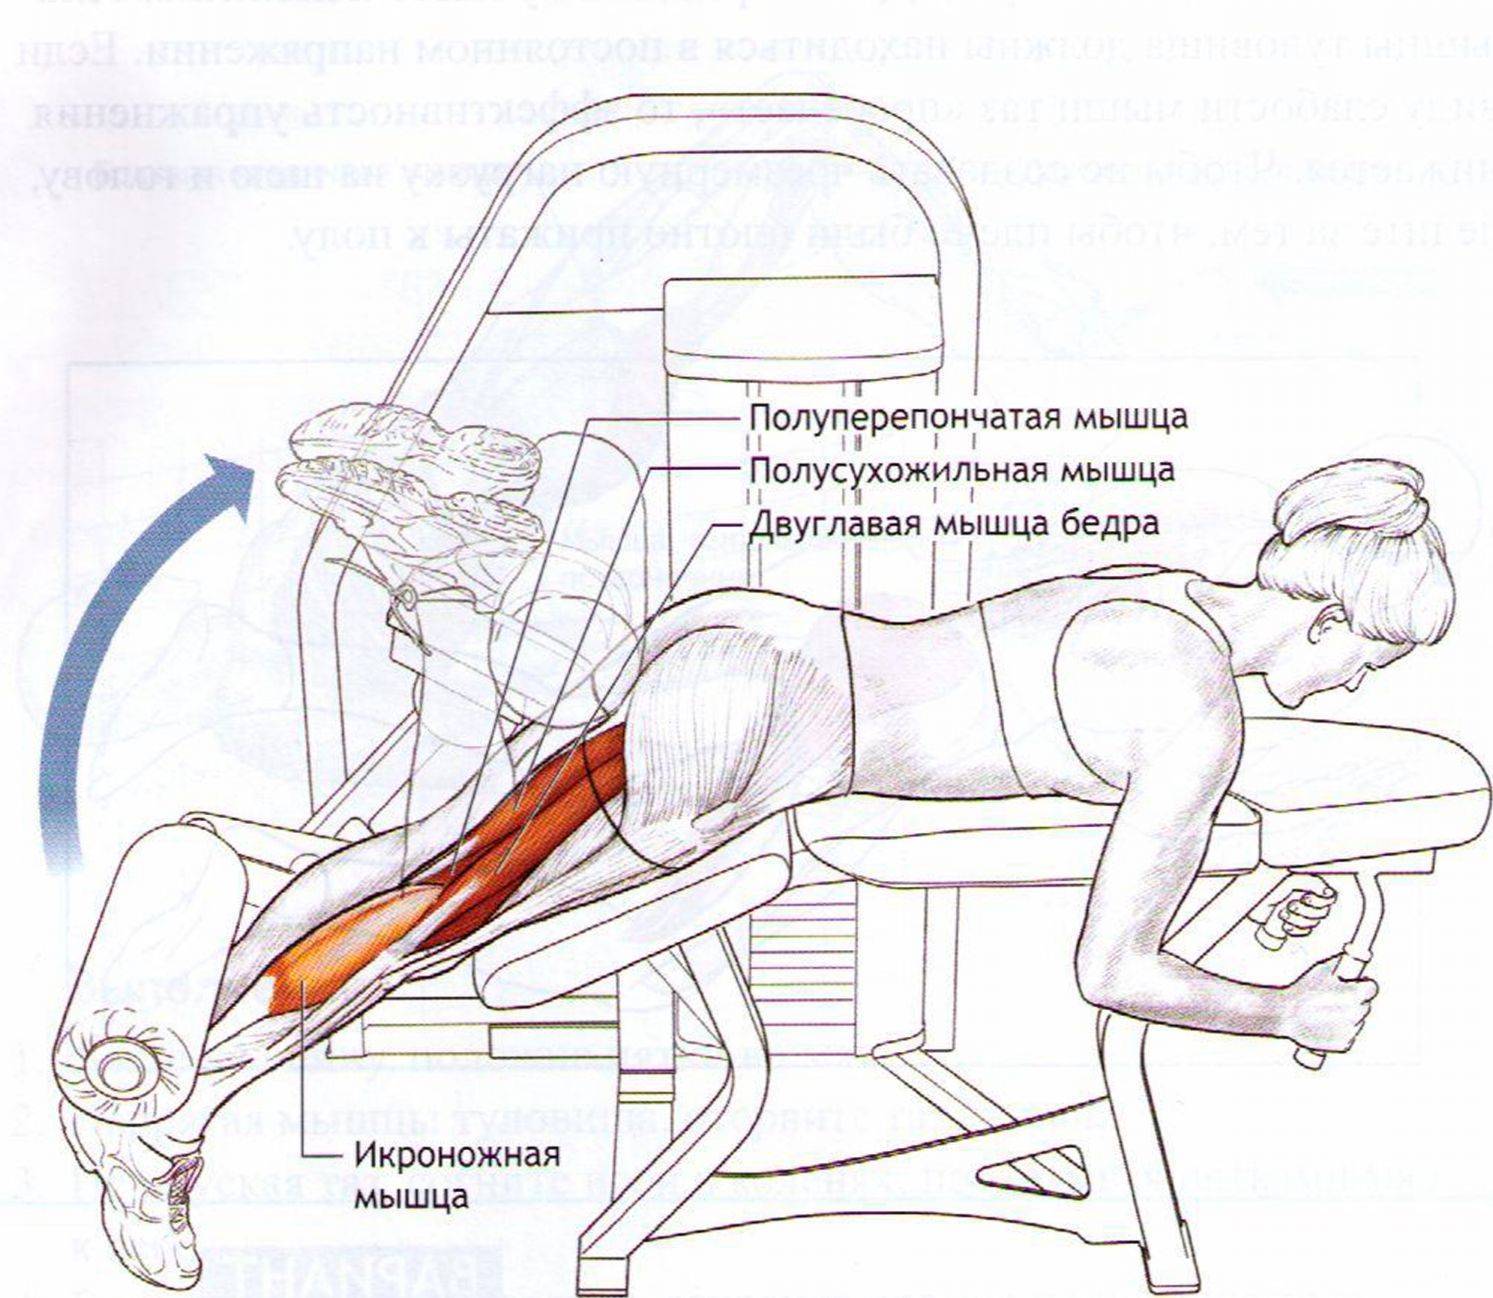 Сгибание ног в тренажере лежа и сидя, особенности, правильная техника